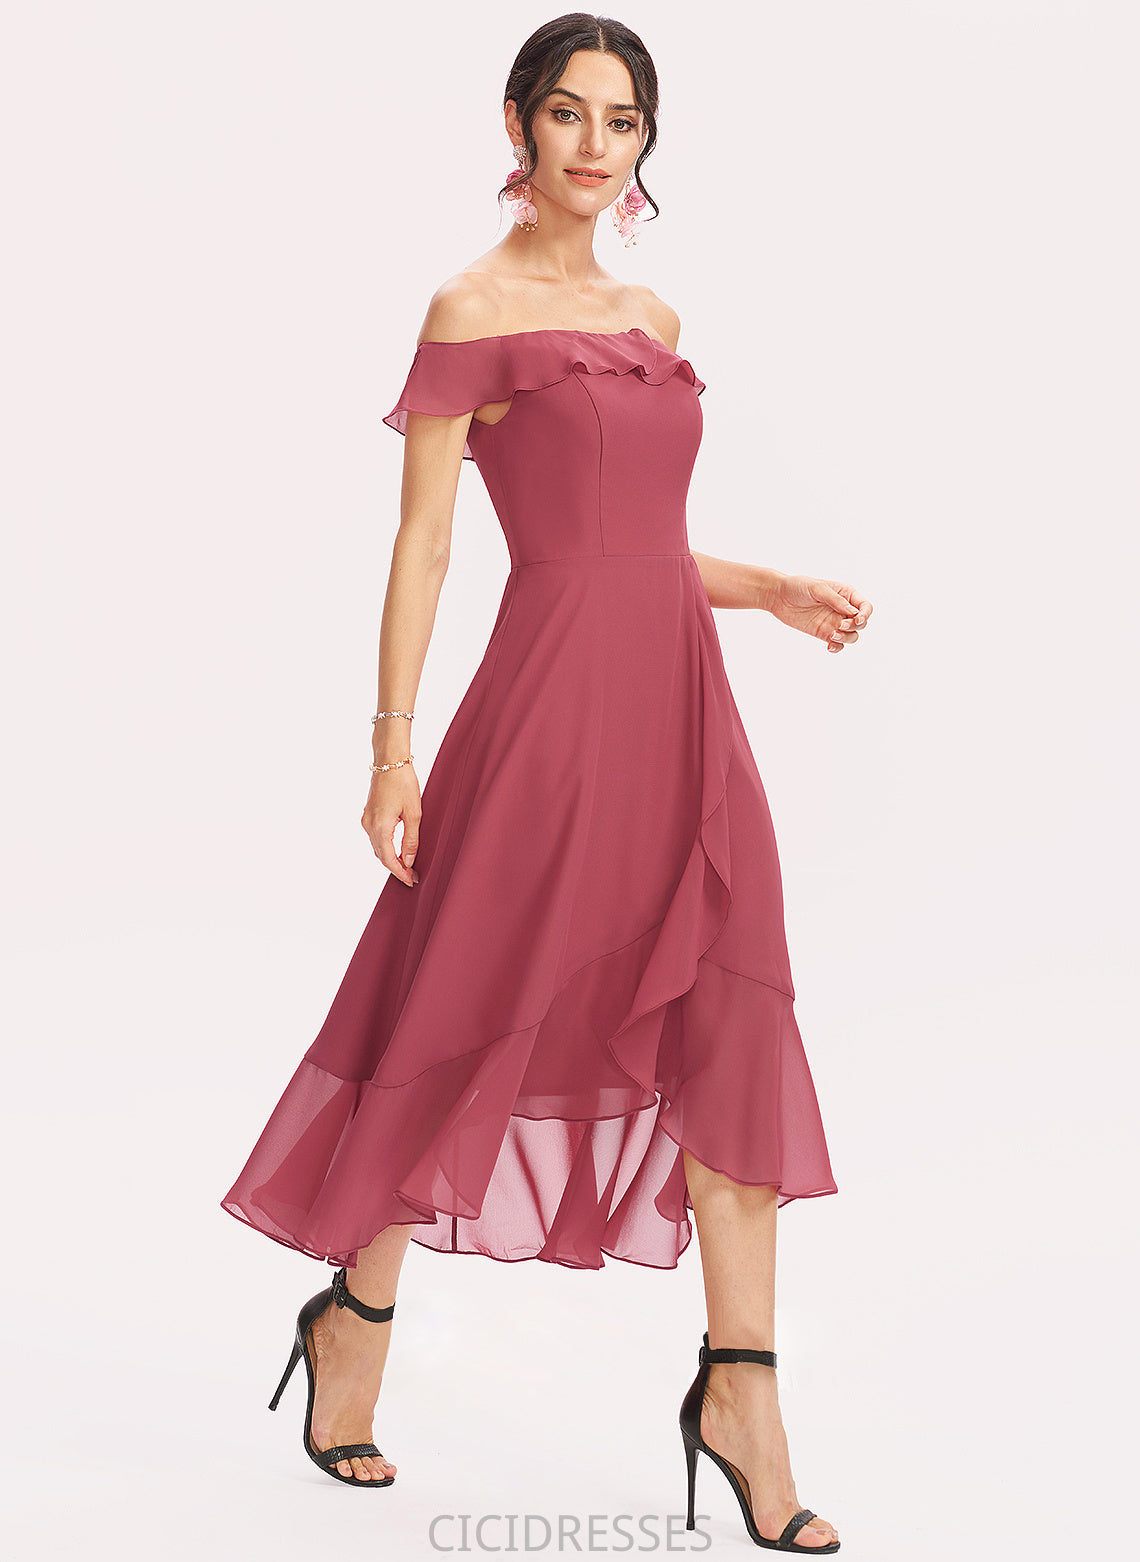 Off-the-Shoulder Tea-Length Neckline Fabric A-Line Embellishment Silhouette CascadingRuffles Length Lilyana Sleeveless Natural Waist Bridesmaid Dresses